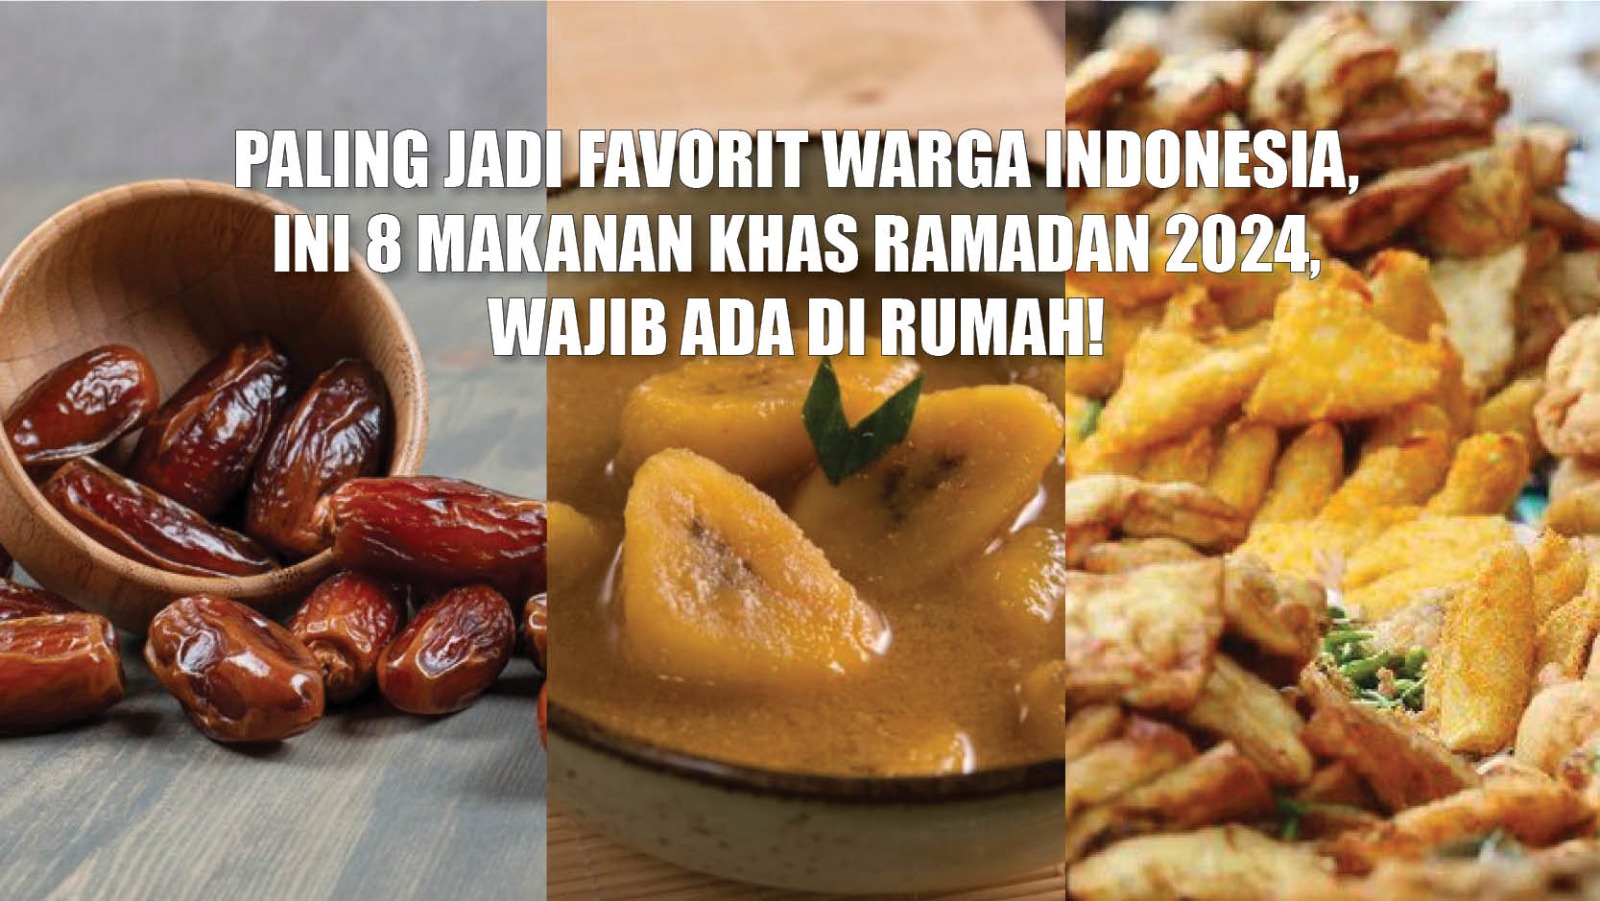 Paling Jadi Favorit Warga Indonesia, Ini 8 Makanan Khas Ramadan 2024, Wajib Ada di Rumah!